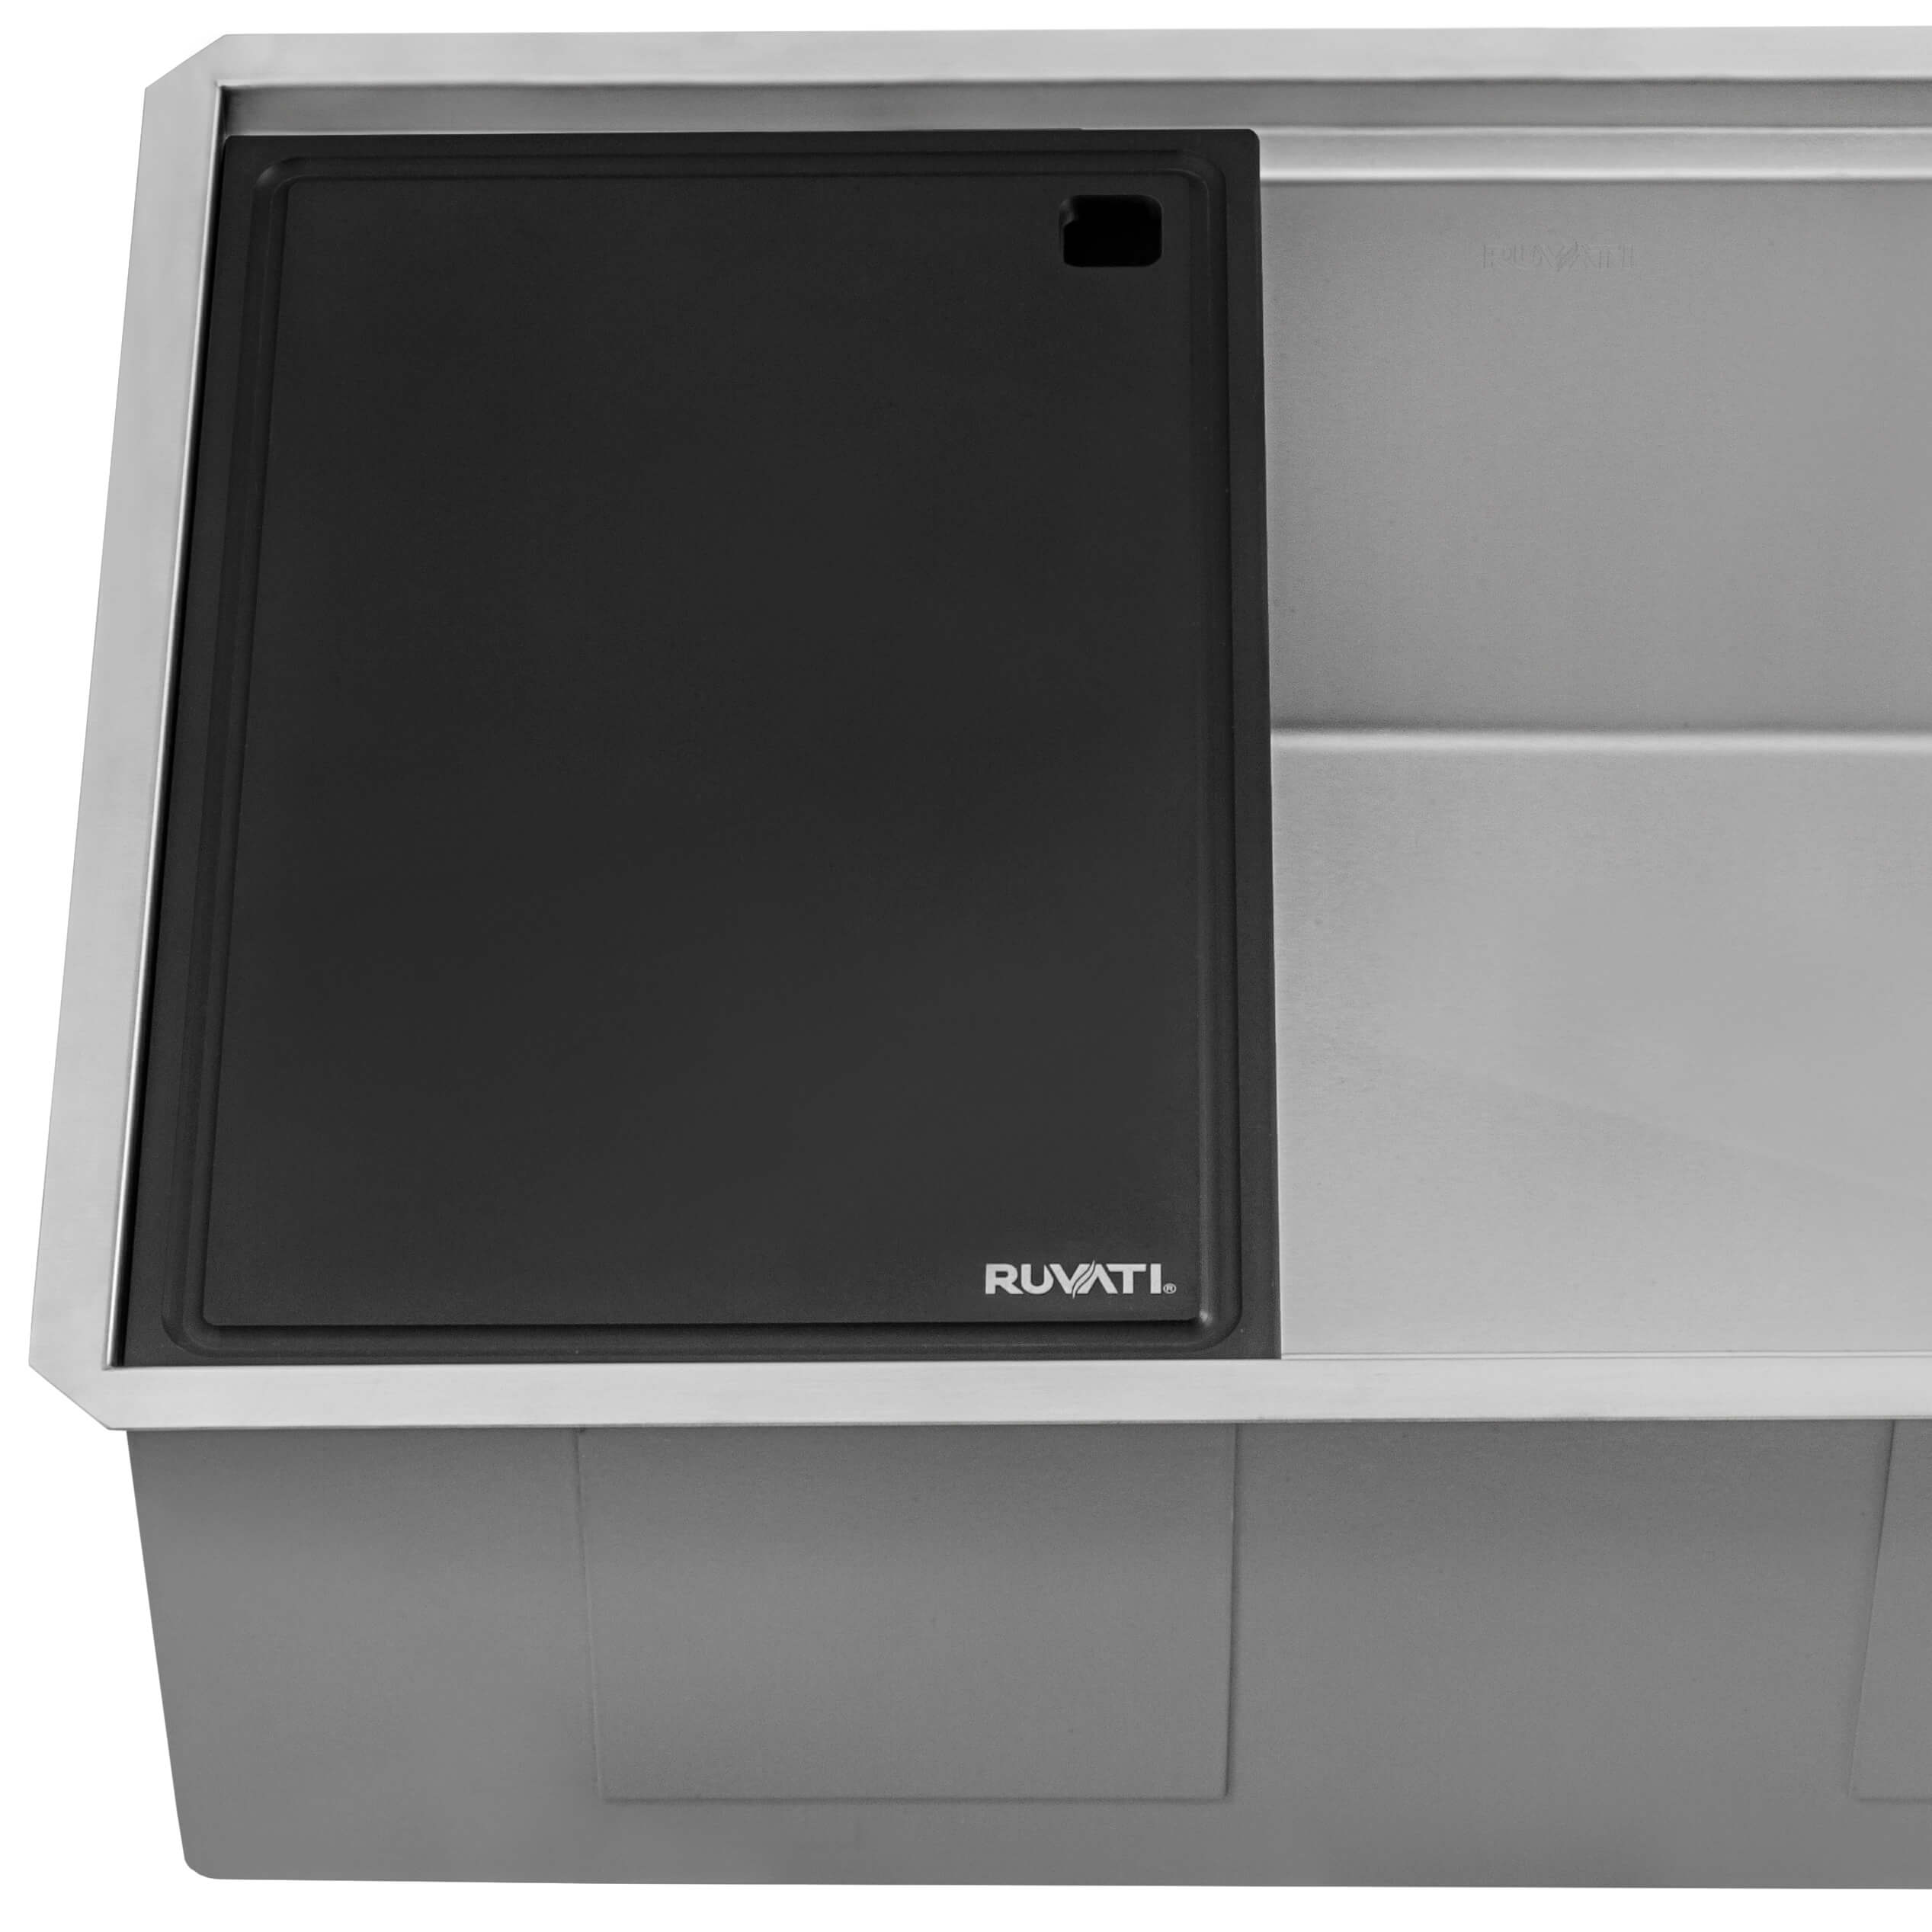 Ruvati - 30-inch Workstation Slope Bottom Offset Drain Undermount 16 Gauge Kitchen Sink – RVH8584